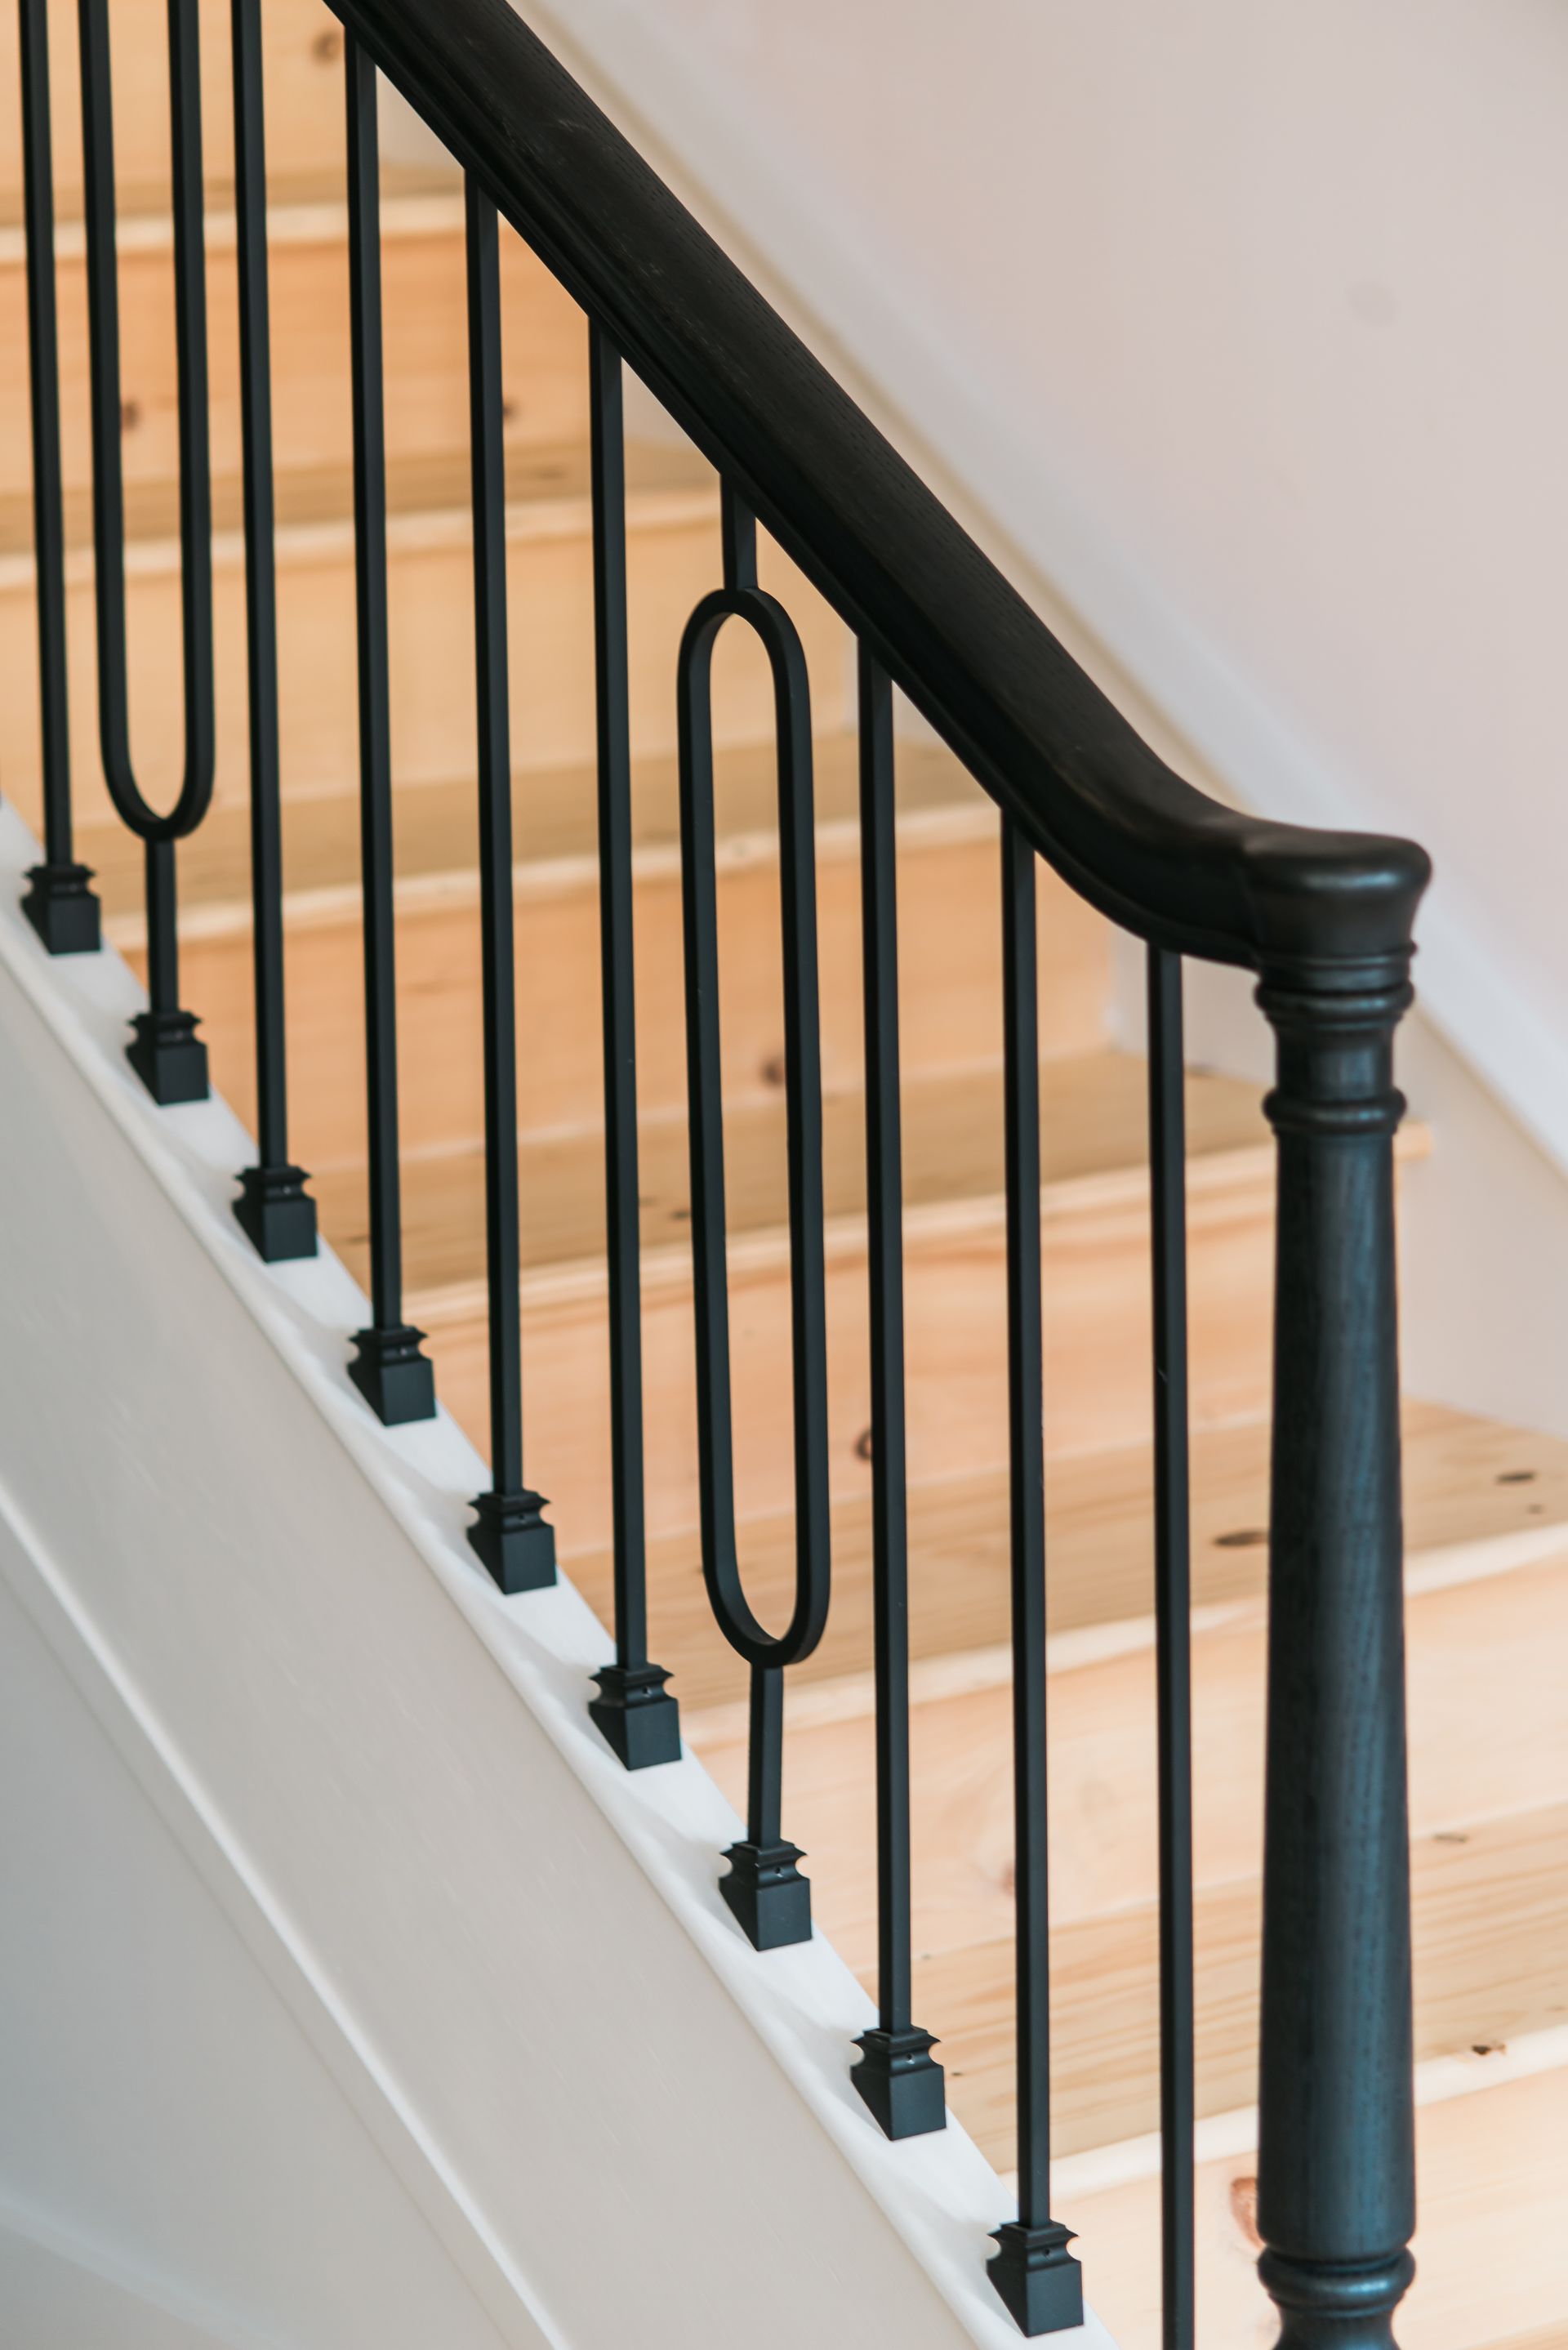 a black stair rail